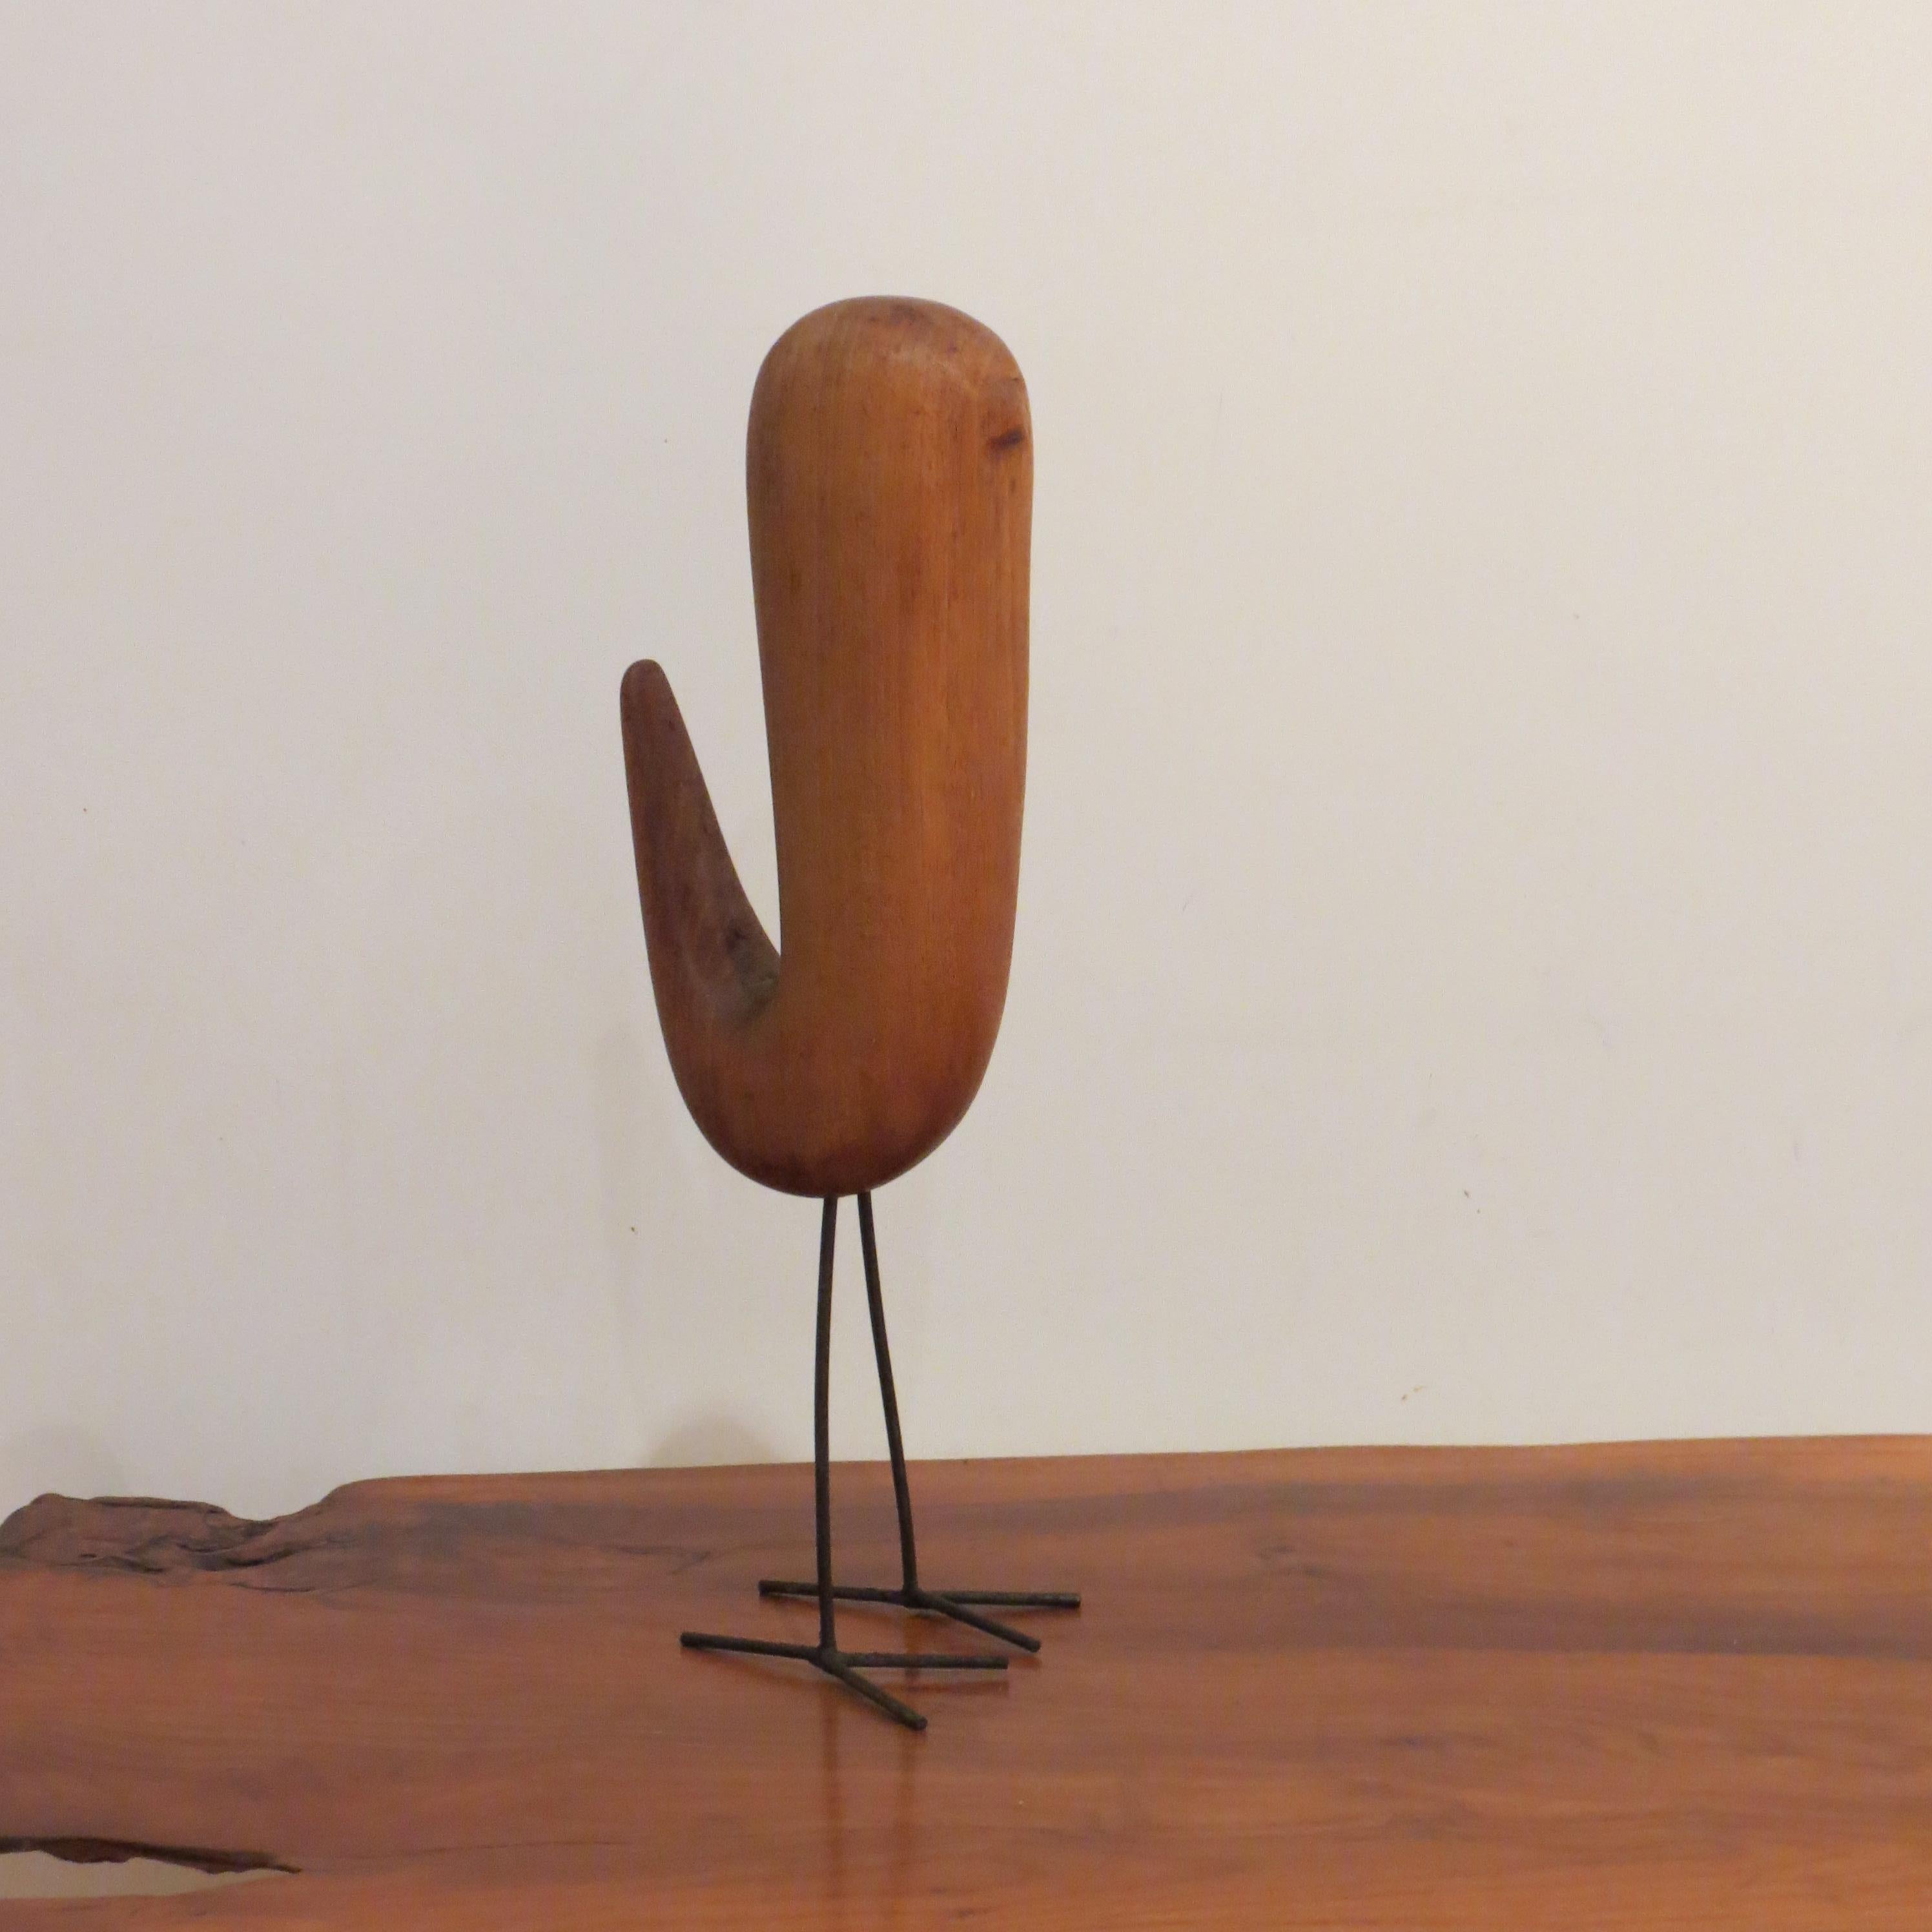 Holz-Vogel-Skulptur aus Teakholz, Vintage, 1960er Jahre (20. Jahrhundert)